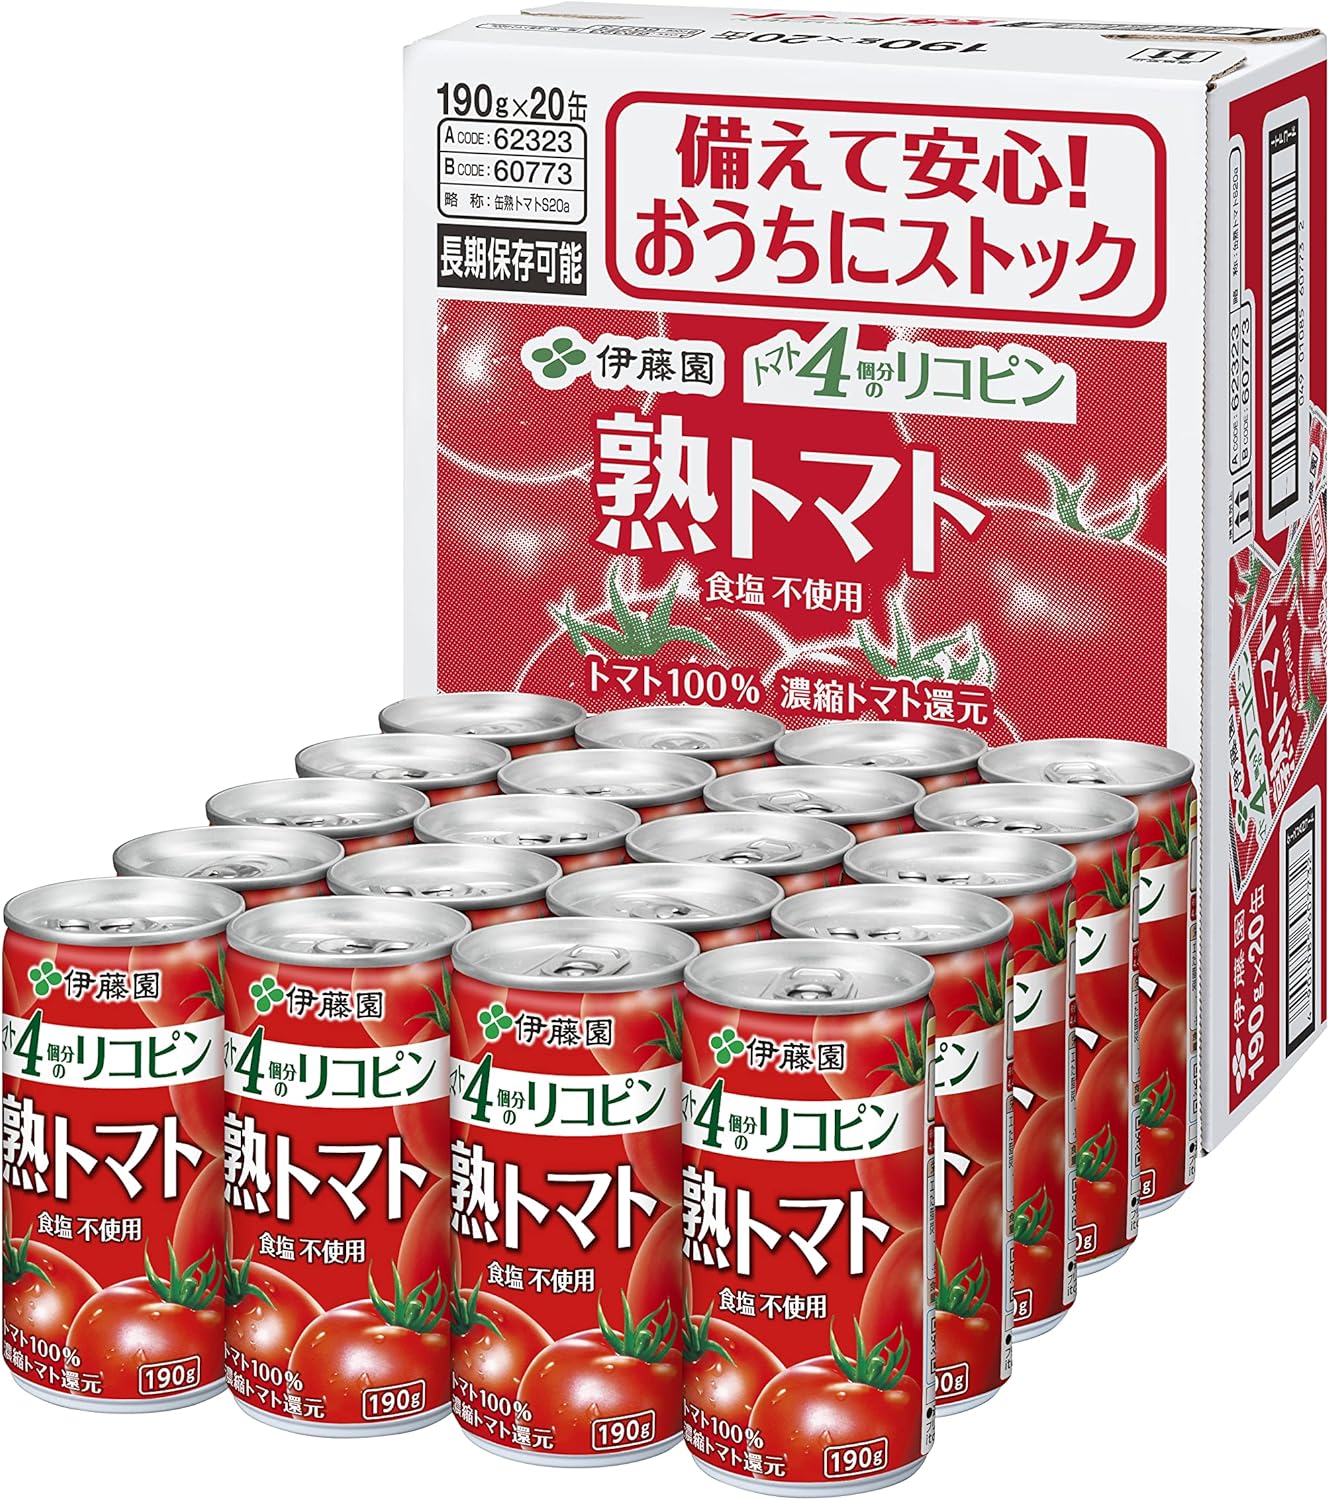 伊藤園 理想のトマト 缶(190g*20本入)